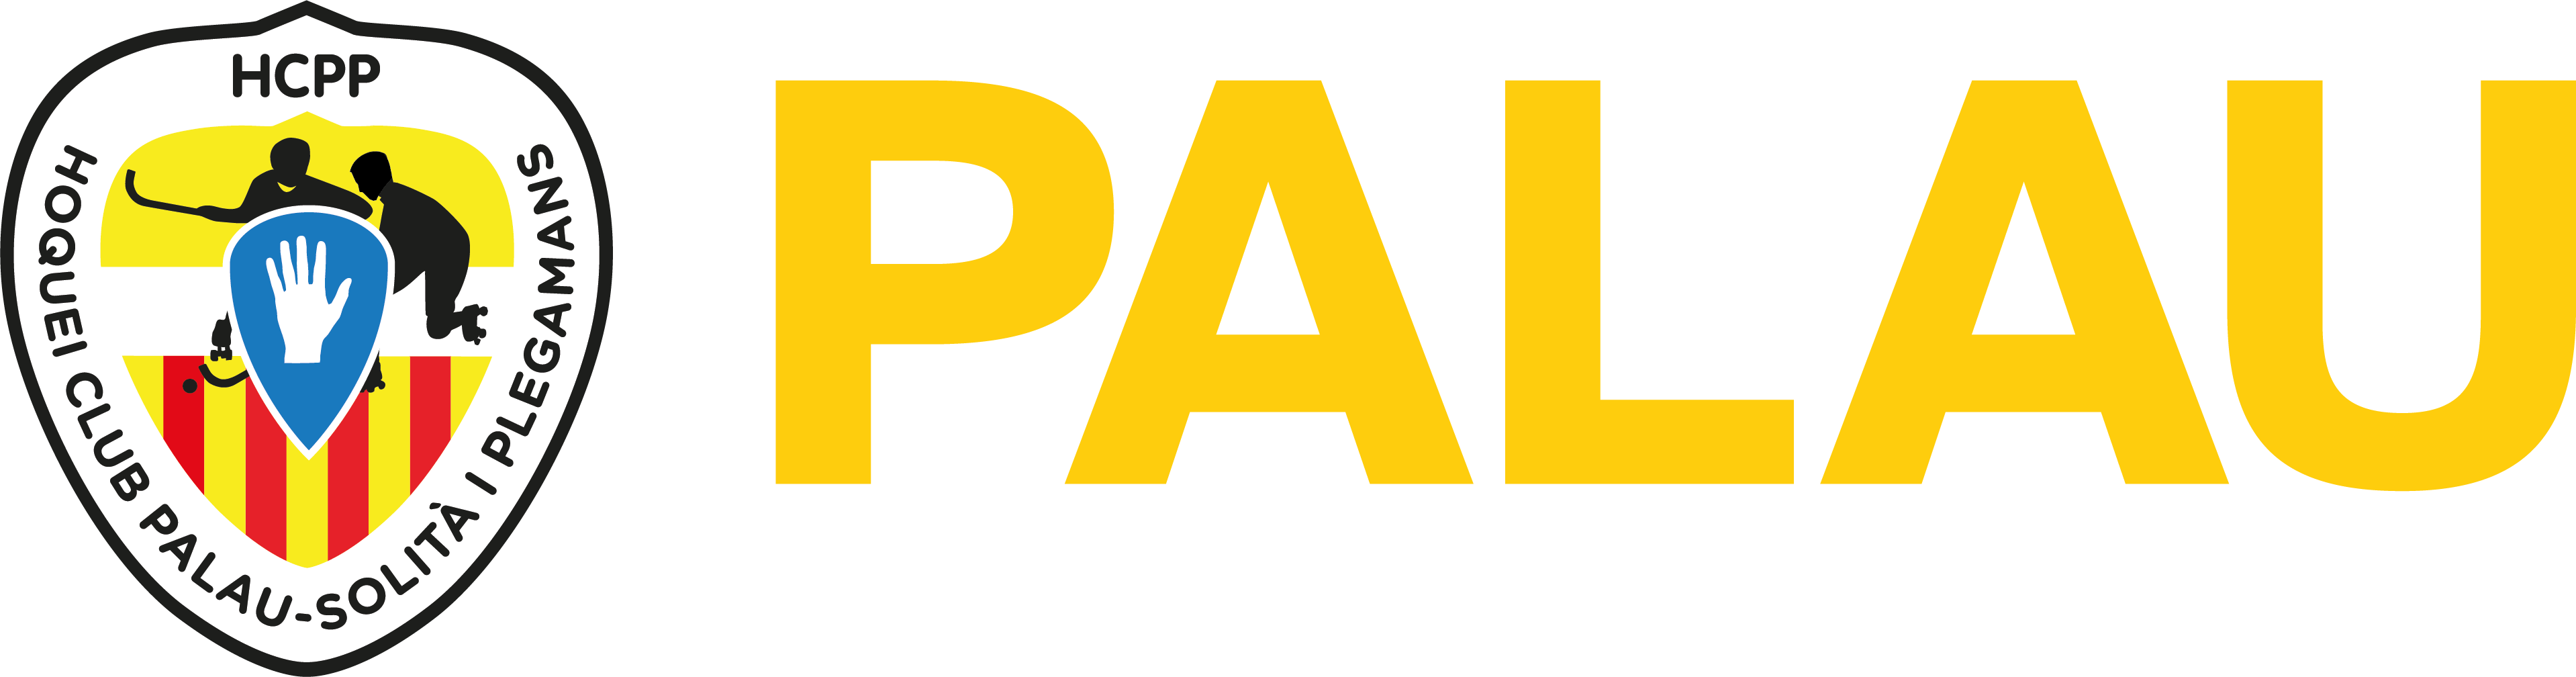 Hoquei Club Palau